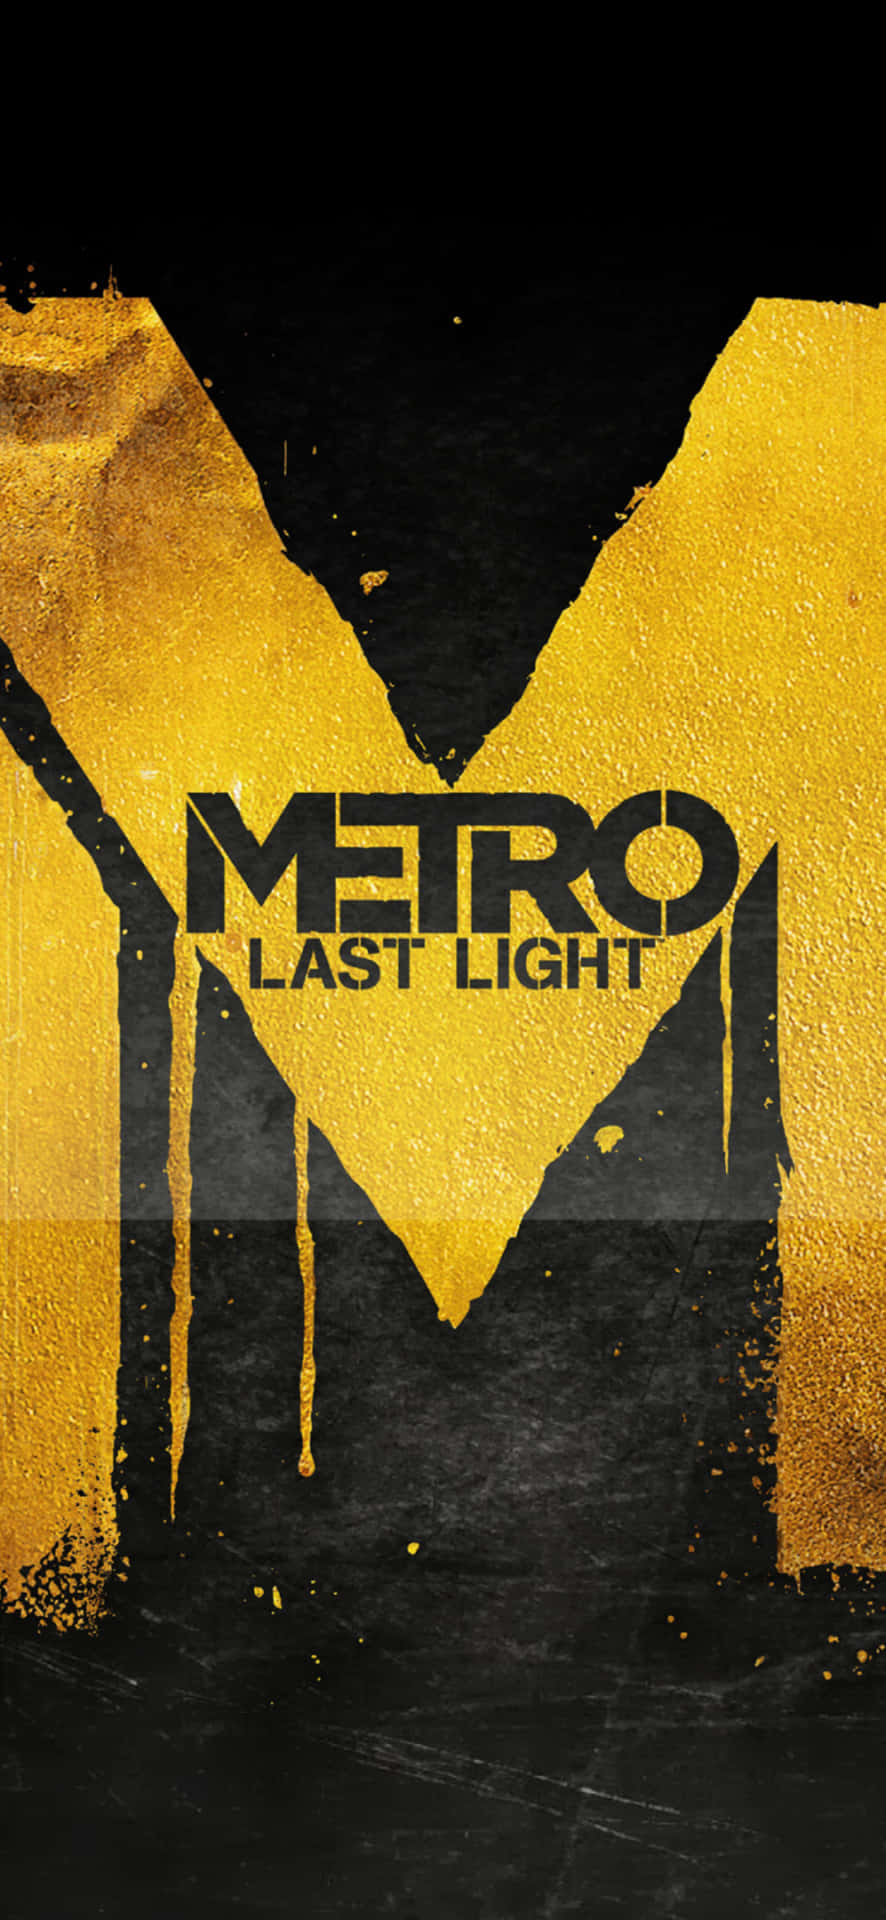 Fondode Pantalla Del Iphone X Con El Logotipo Amarillo De Metro Last Light.